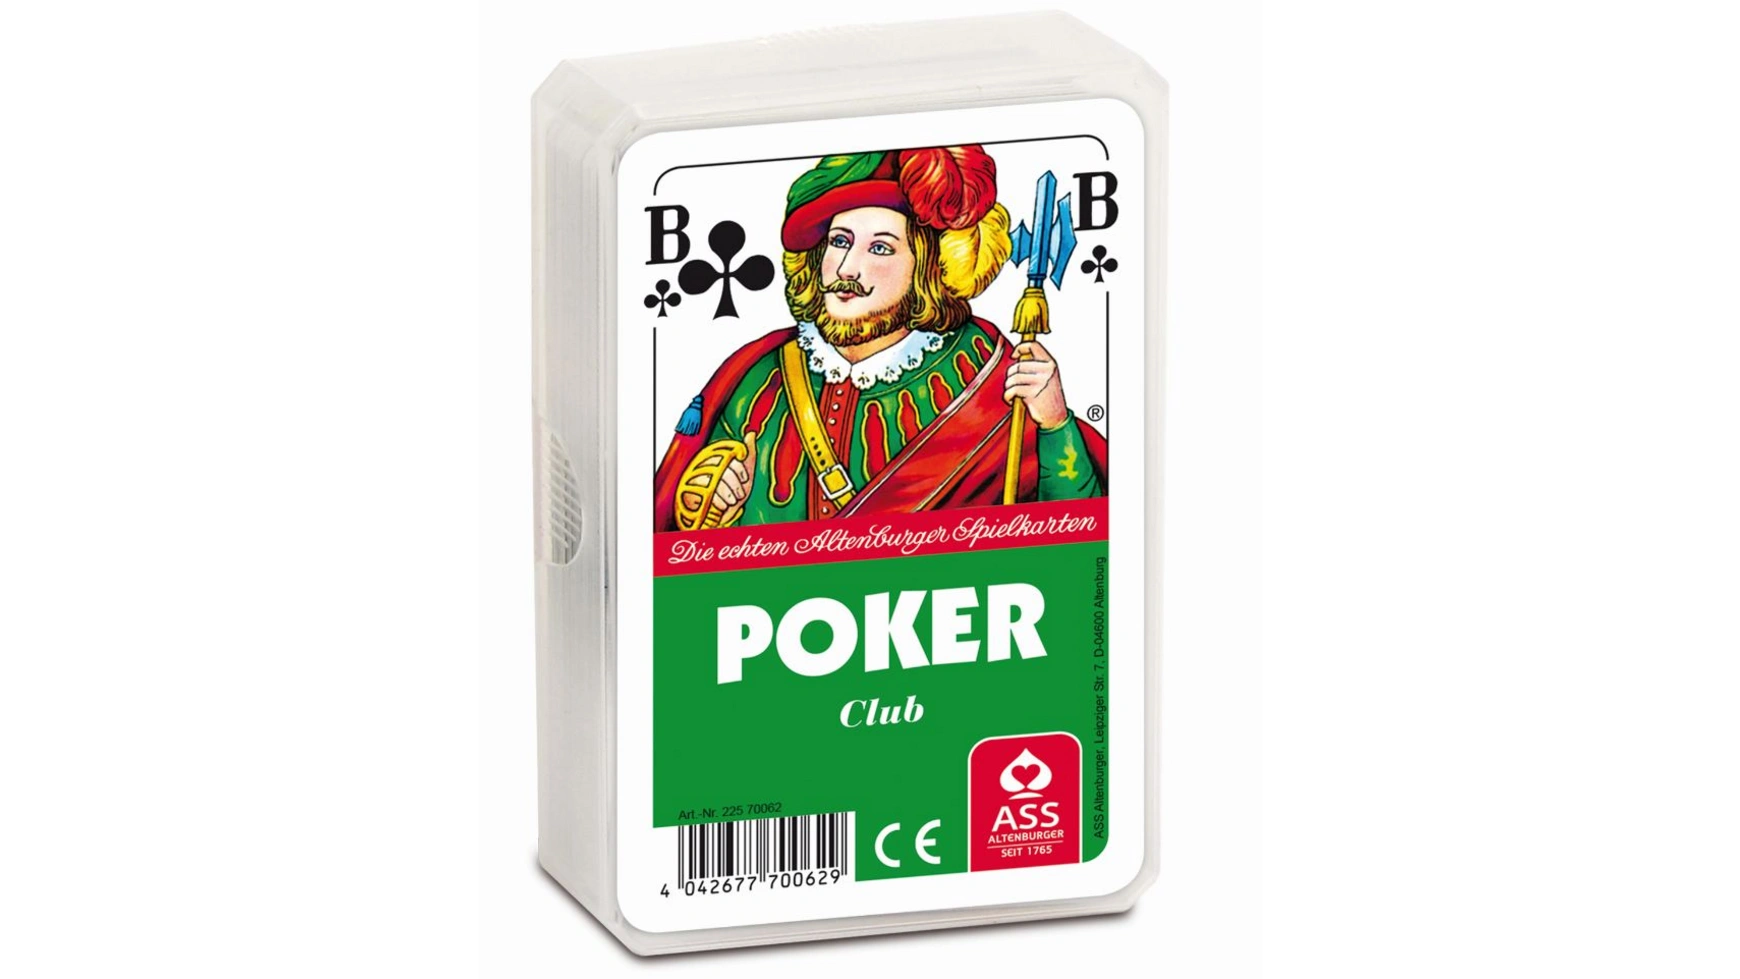 Ass Altenburger Покер, французское изображение